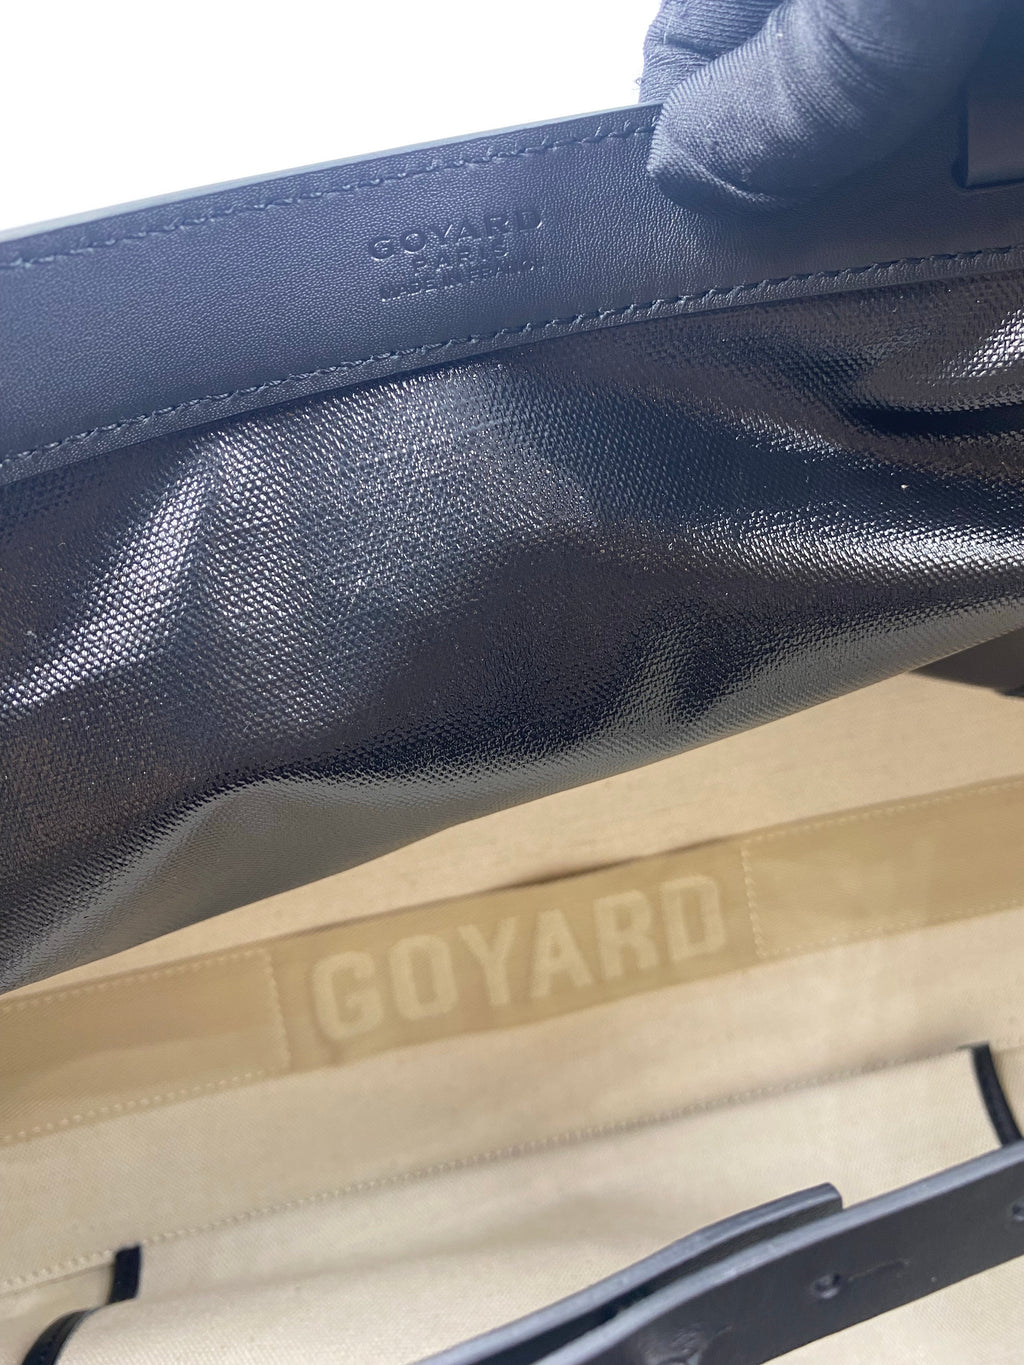 Goyard, Bags, Goyard Anjou Pm Bag With Luggage Tag